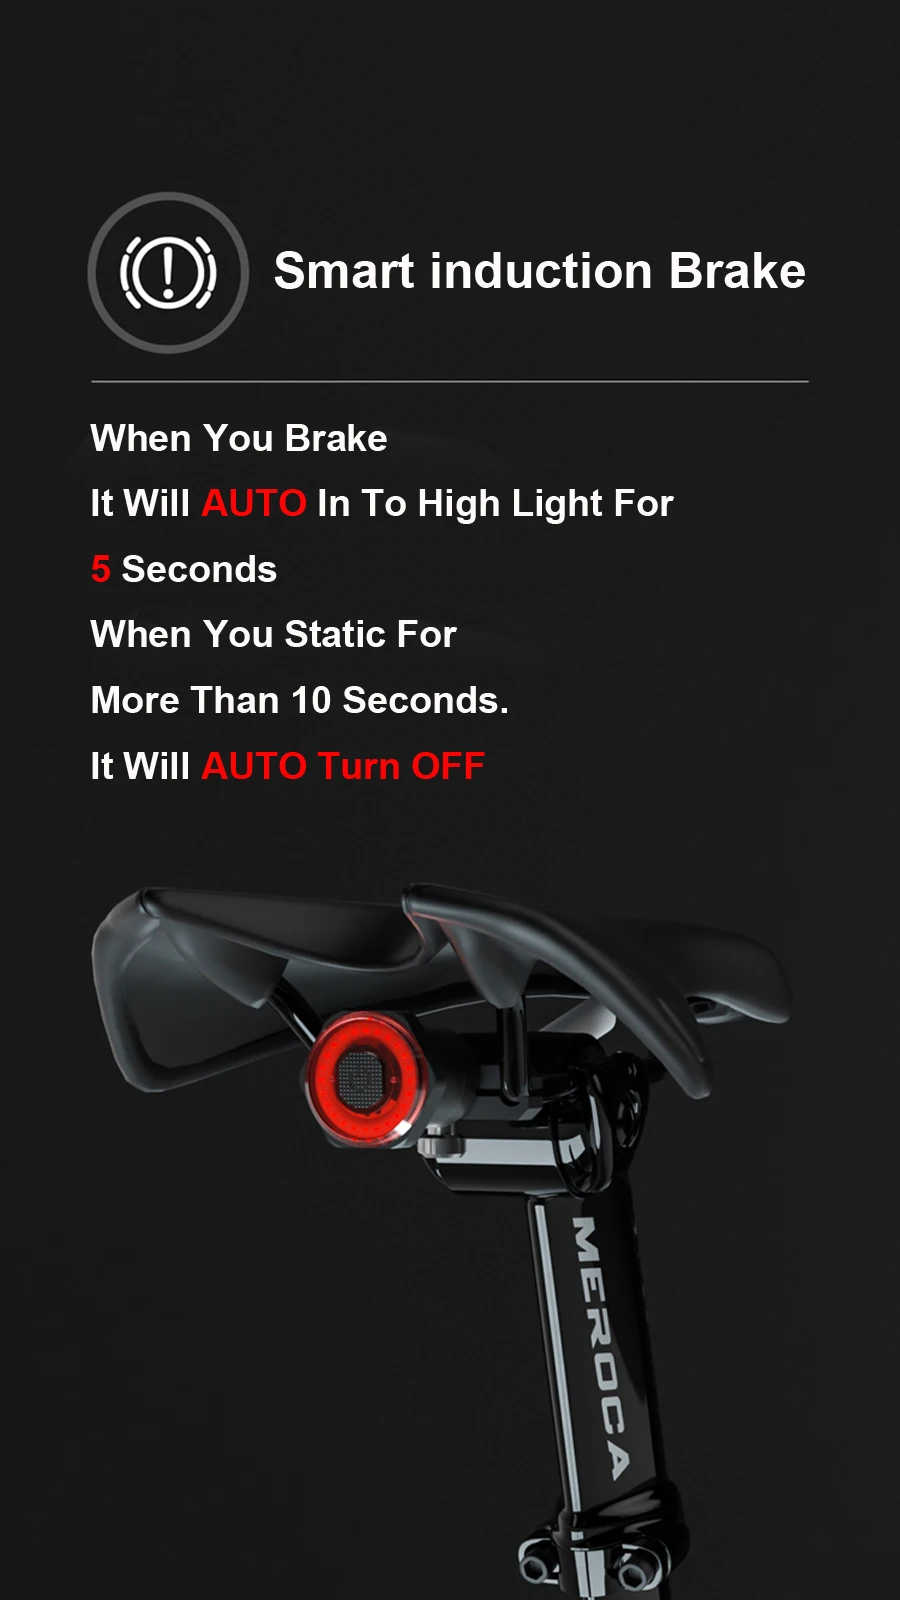 GENG Fahrrad Cateye Lichter 2ST Smart-Fahrrad-R/ücklicht Auto Start//Stop Brems Sensing IPx6 wasserdichte USB Charge Radfahren Heckscheinwerfer Fahrrad-Licht